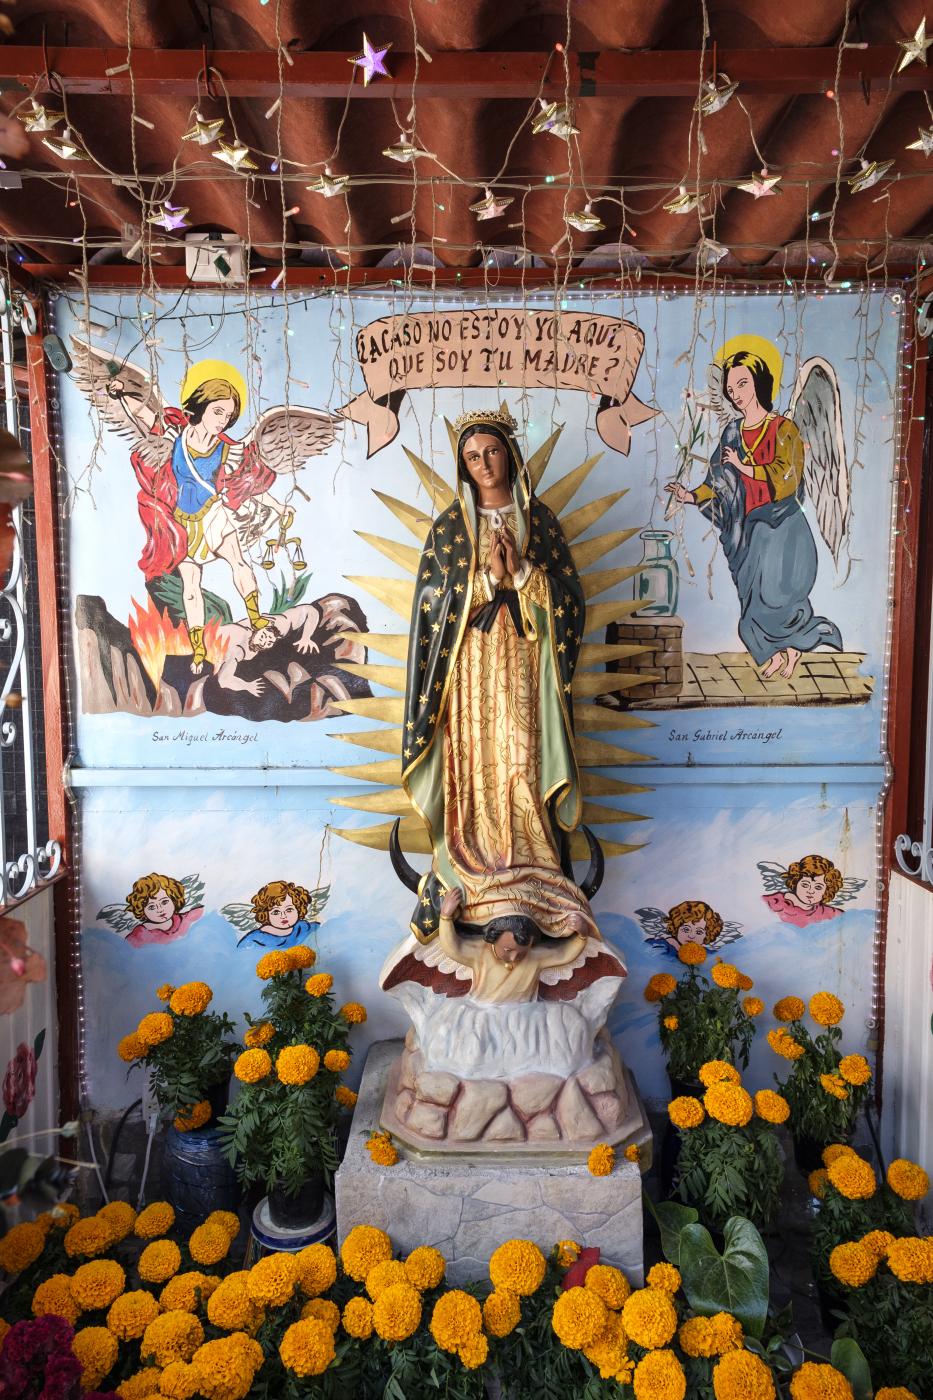 La Virgen de Guadalupe | Buy this image